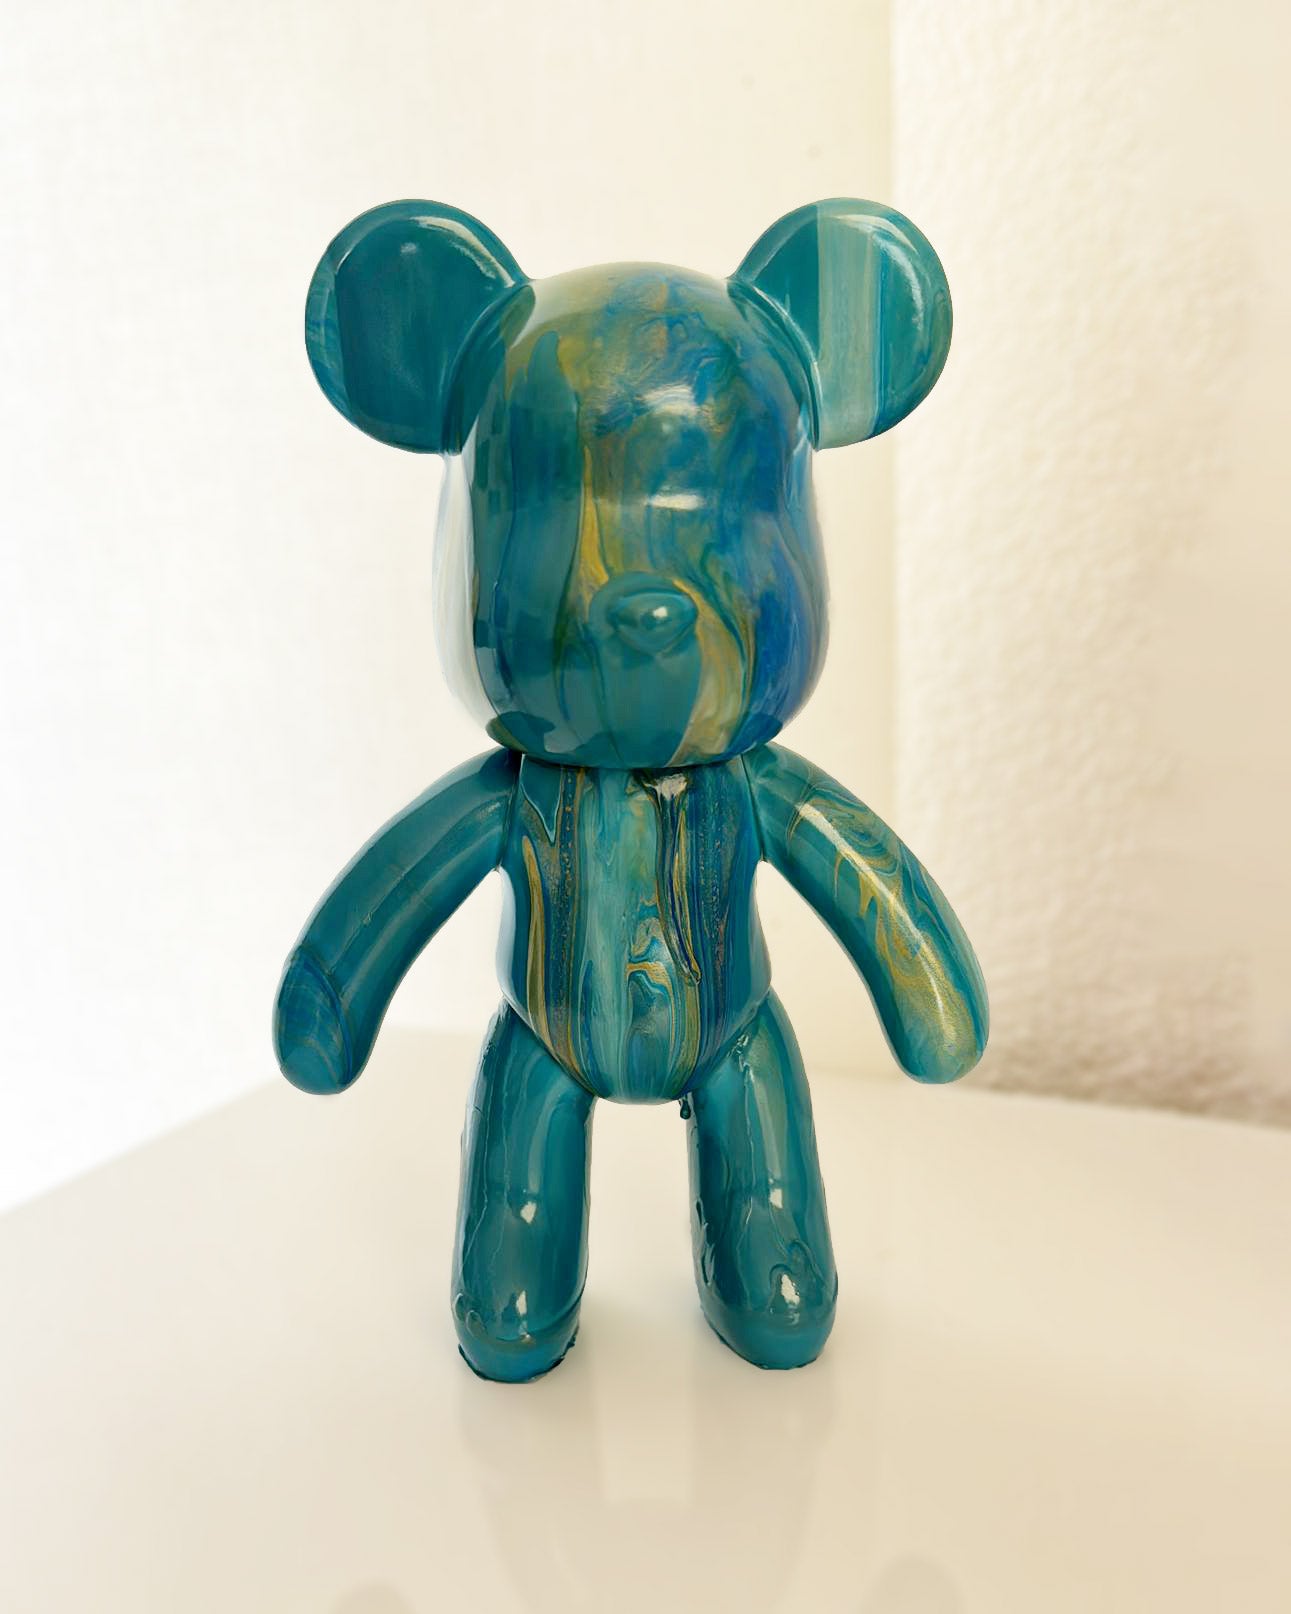 Kit de peinture pouring fluide art - Ours Teddy Bear Bleu / Blanc /Or JOY!